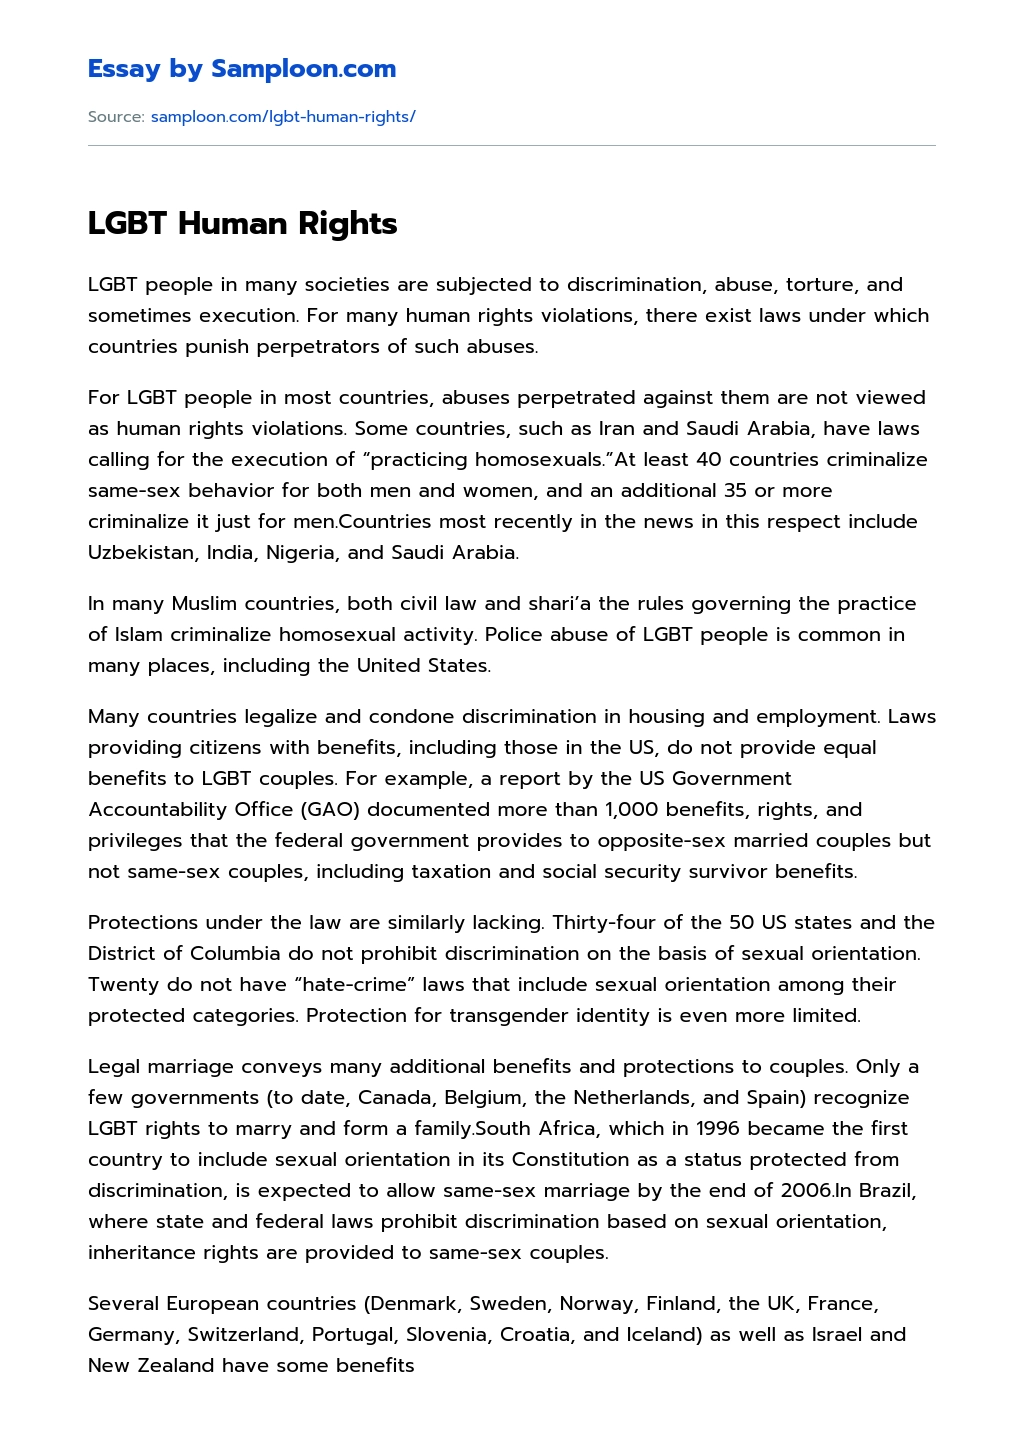 LGBT Human Rights essay